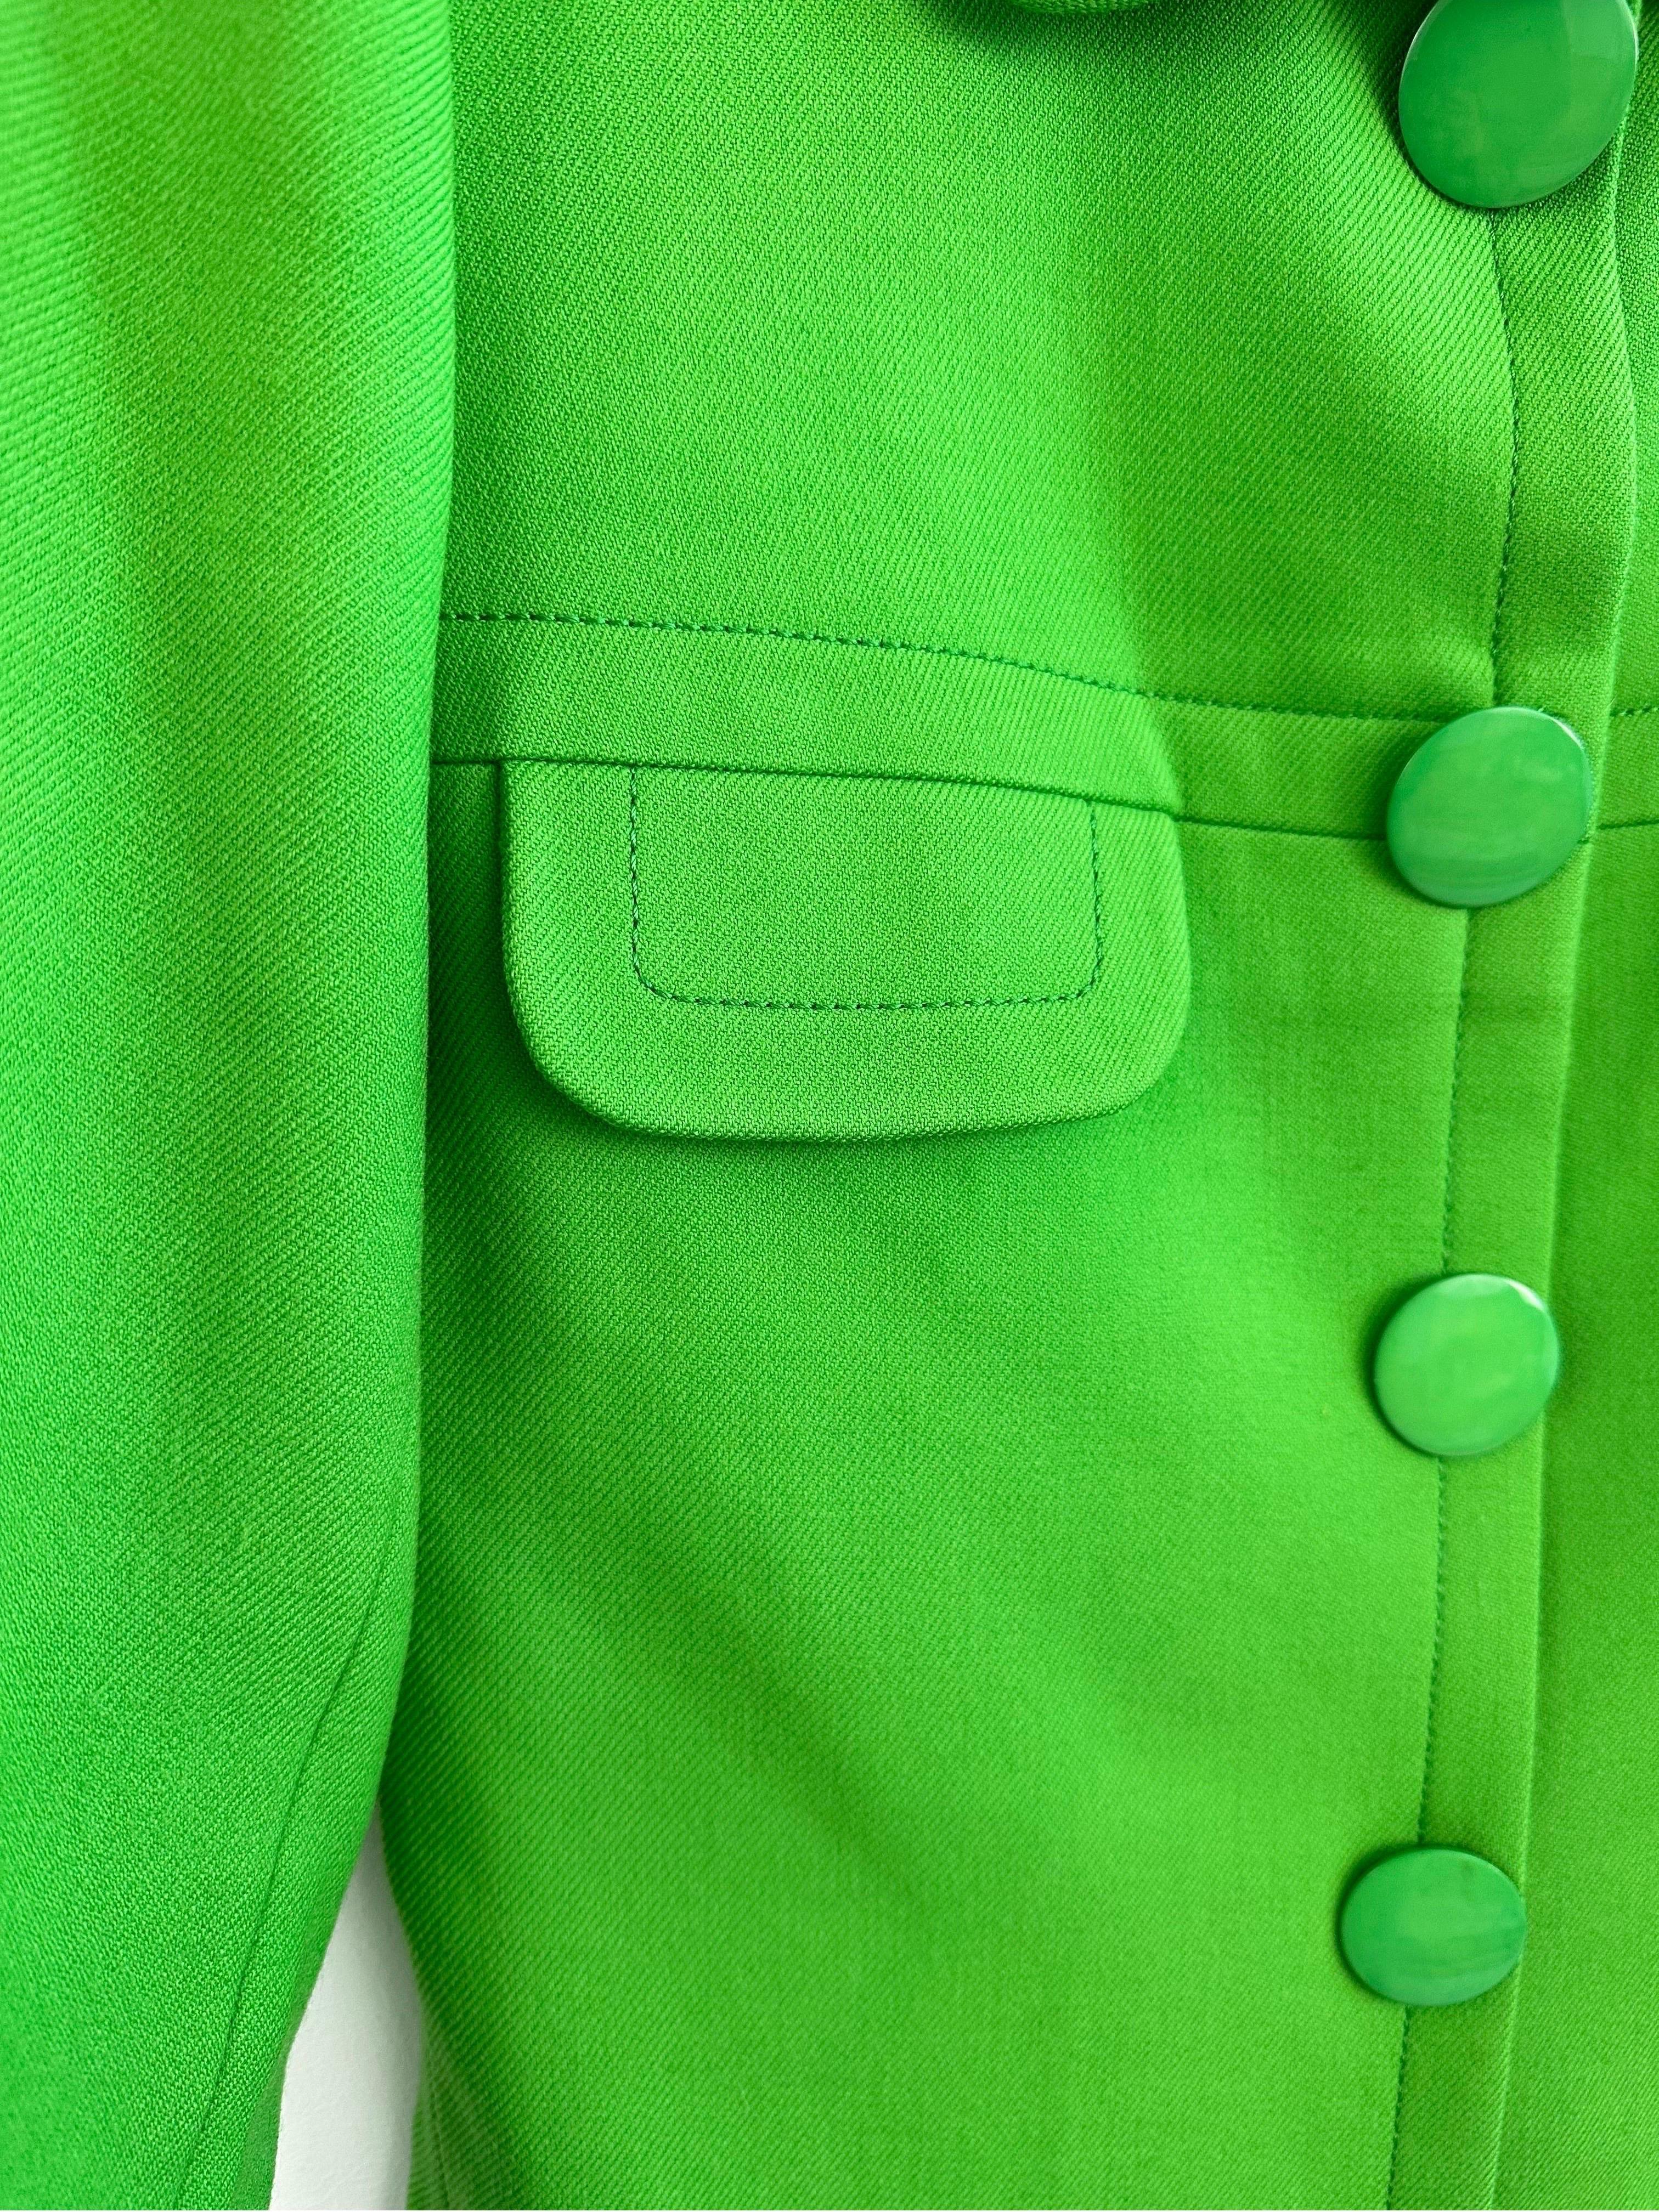 Pierre Cardin Promotion 1970s green wool jacket For Sale 6